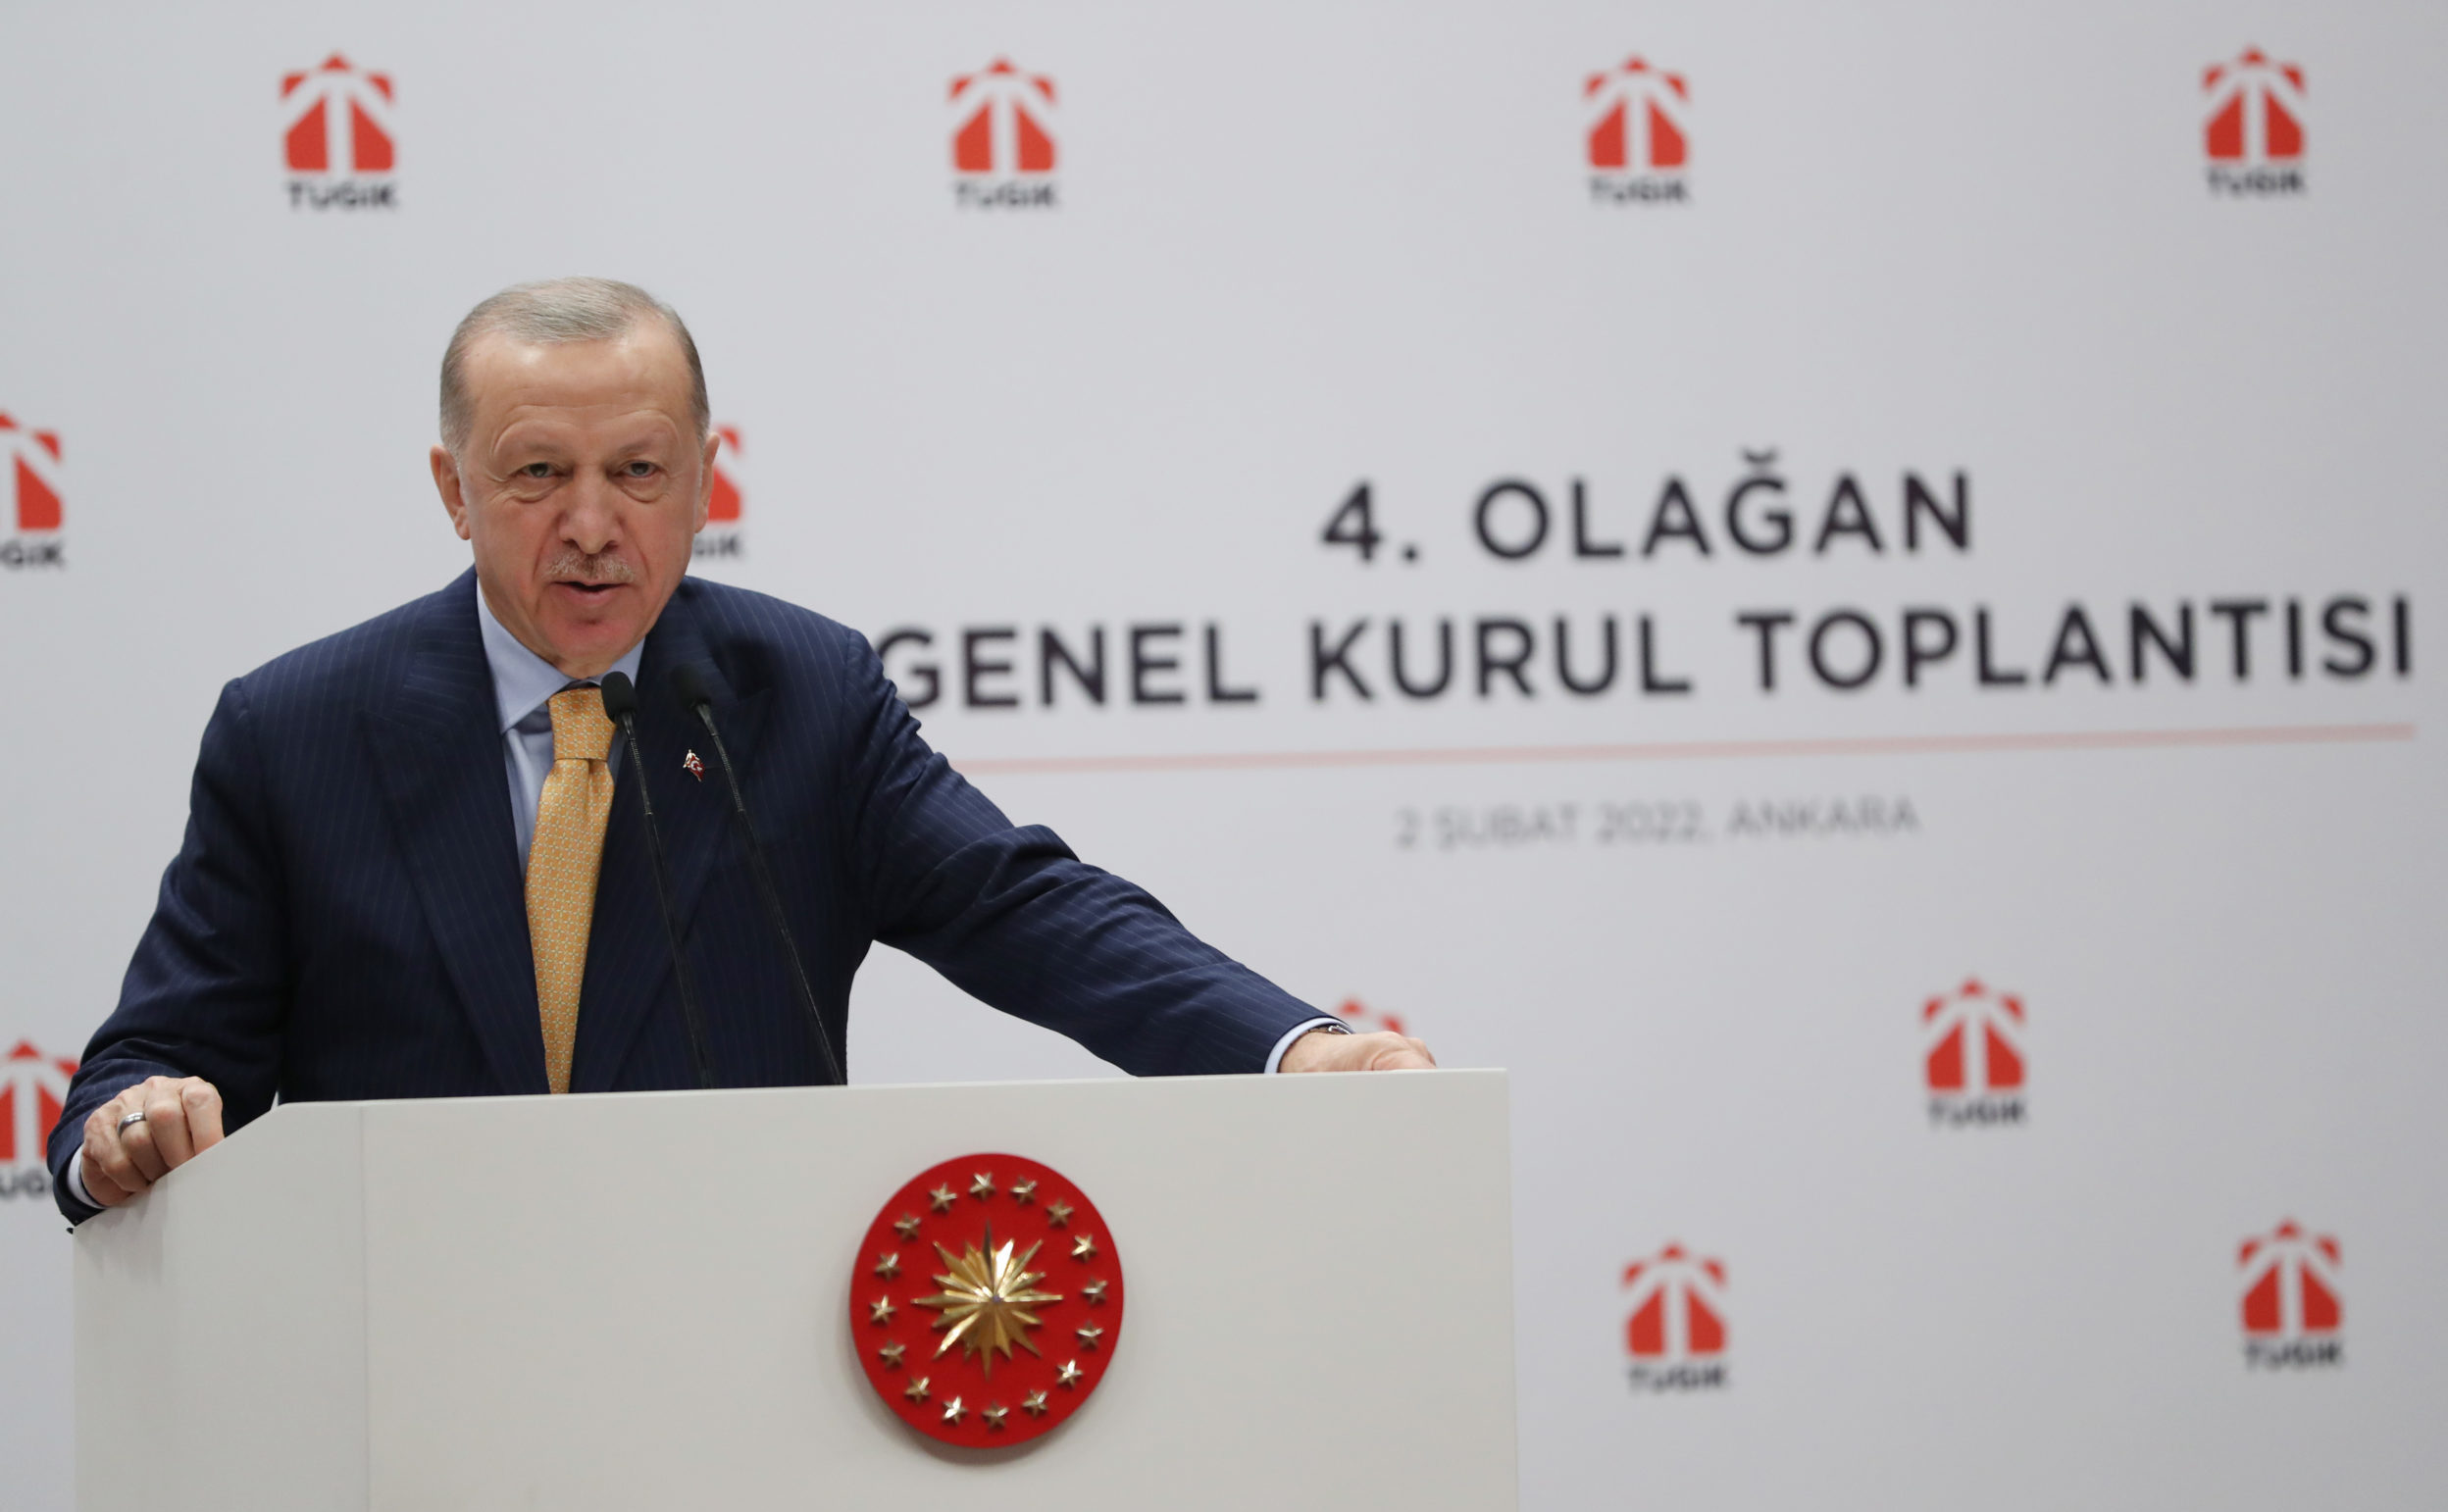 Cumhurbaşkanı Erdoğan: “Yakında ikinci nükleer enerji santrali de geliyor”